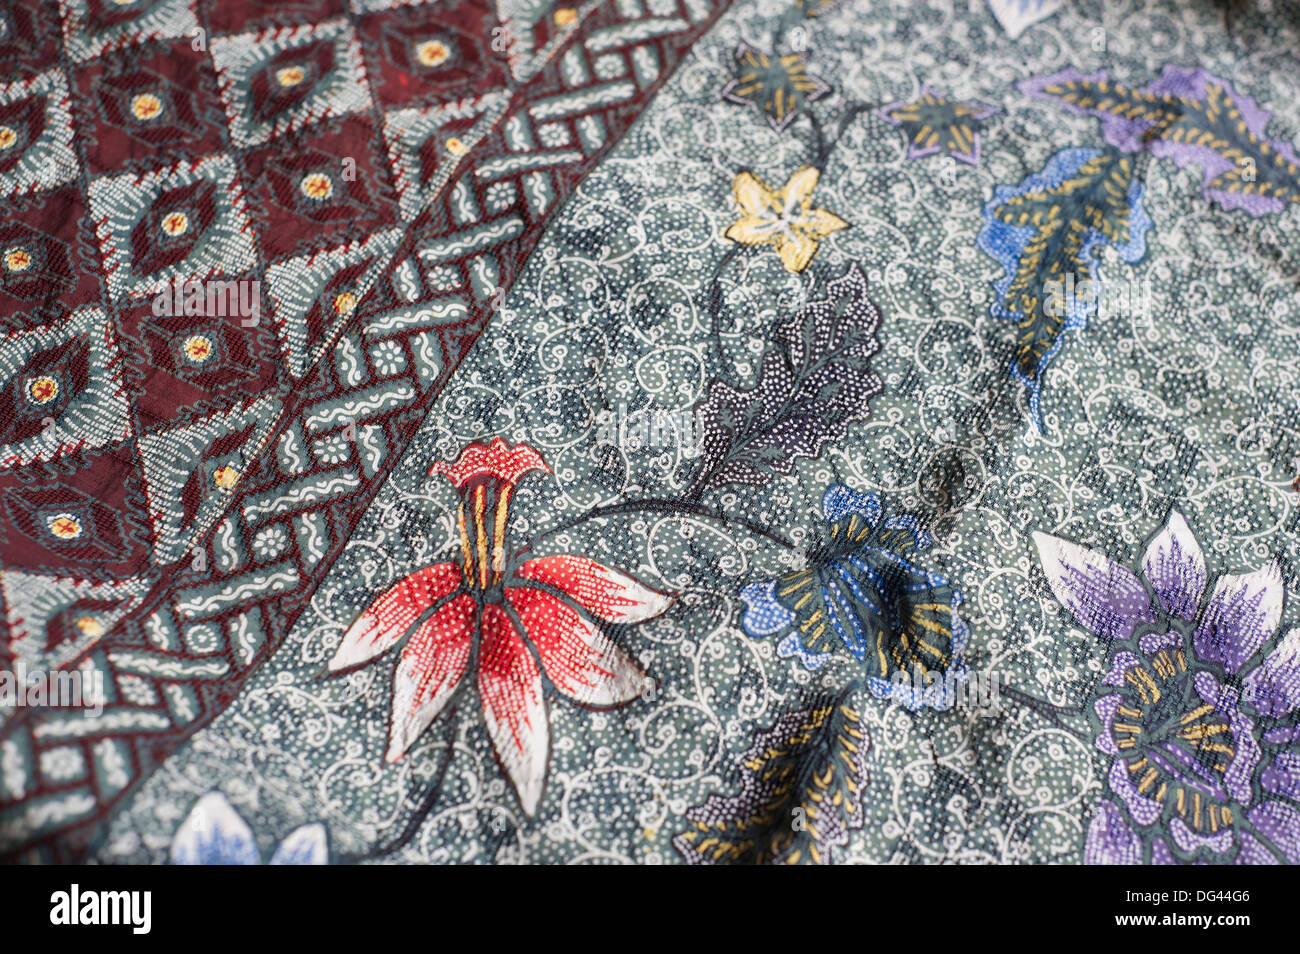 Batik complexes en cire sur le modèle floral sarong traditionnel javanais, Pekalongan, Java, Indonésie, Asie du Sud, Asie Banque D'Images